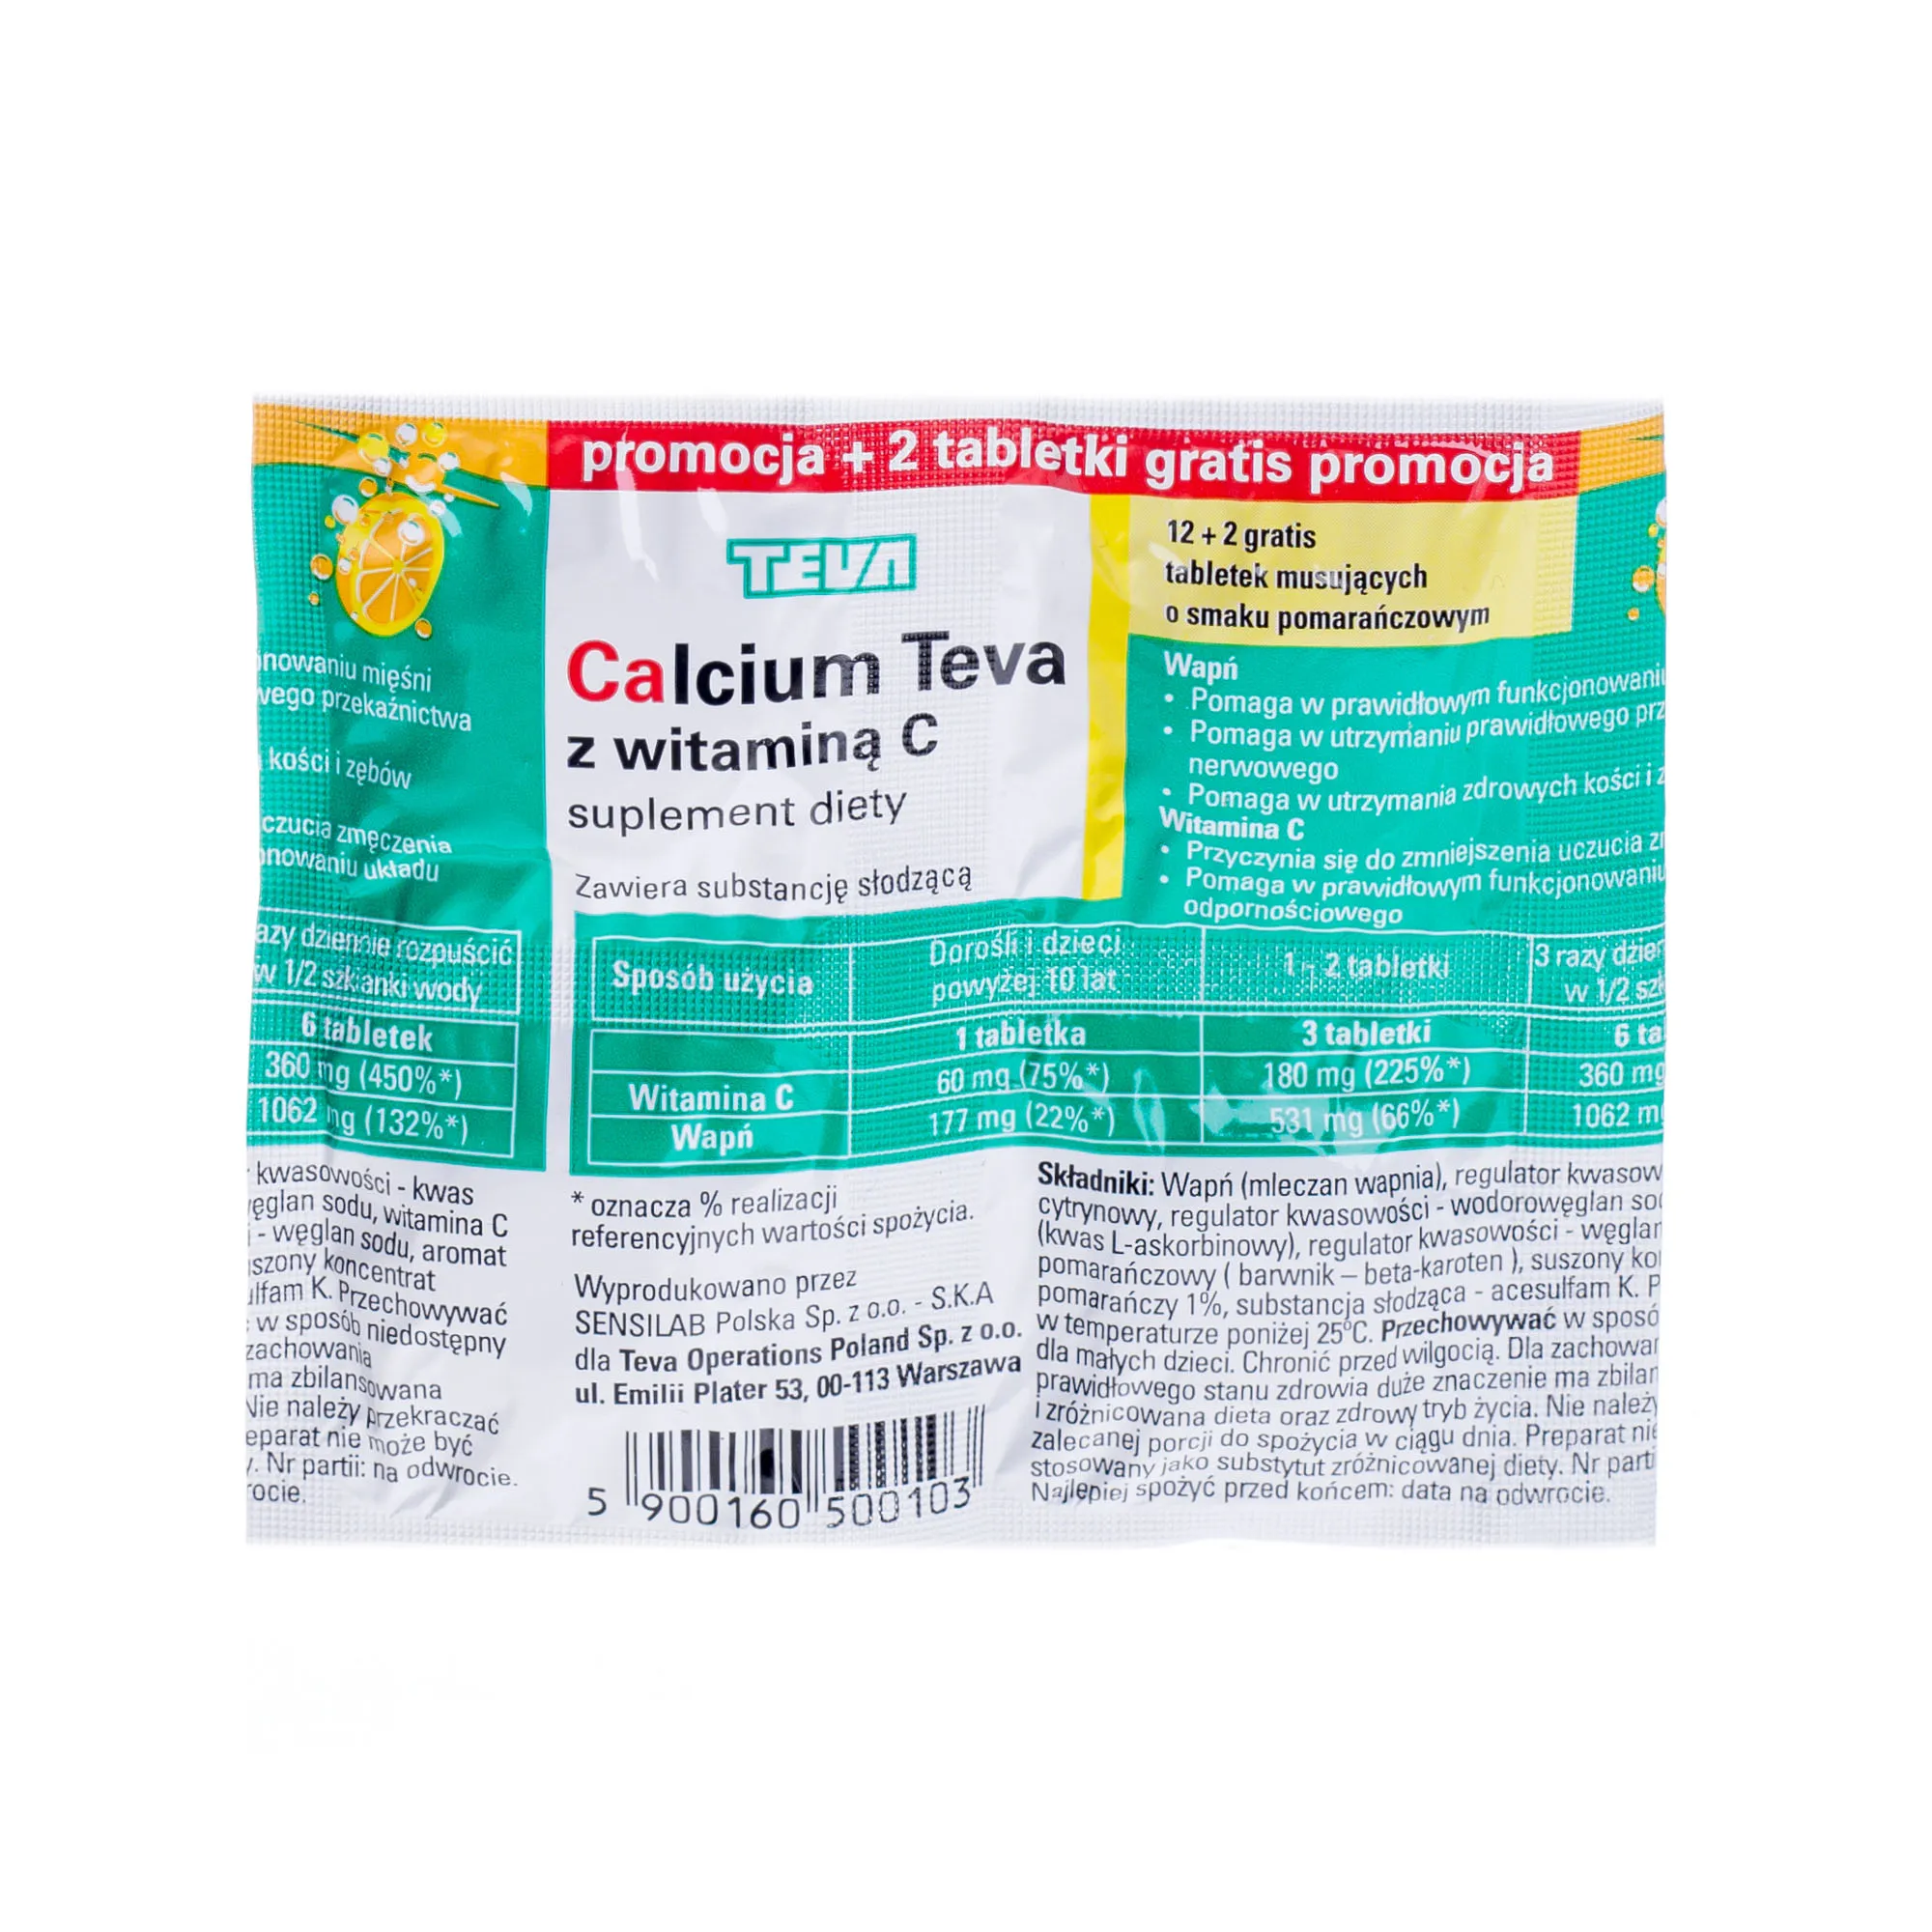 Calcium Teva z witaminą C, suplement diety, 12 + 2 tabletek musujących o smaku pomarańczowym